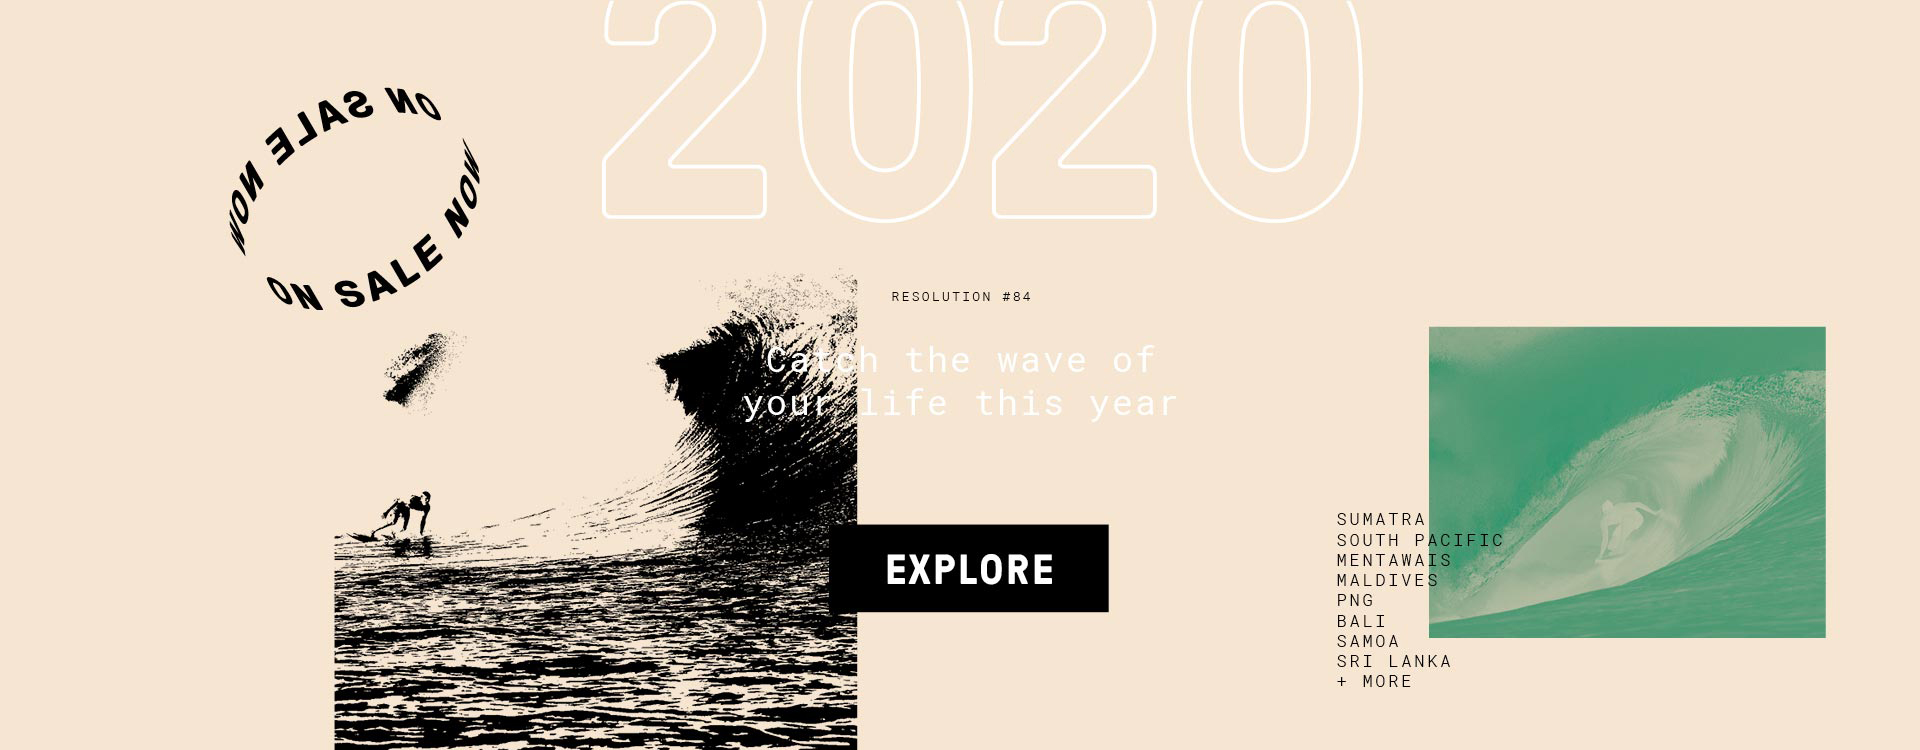 2020 resolution